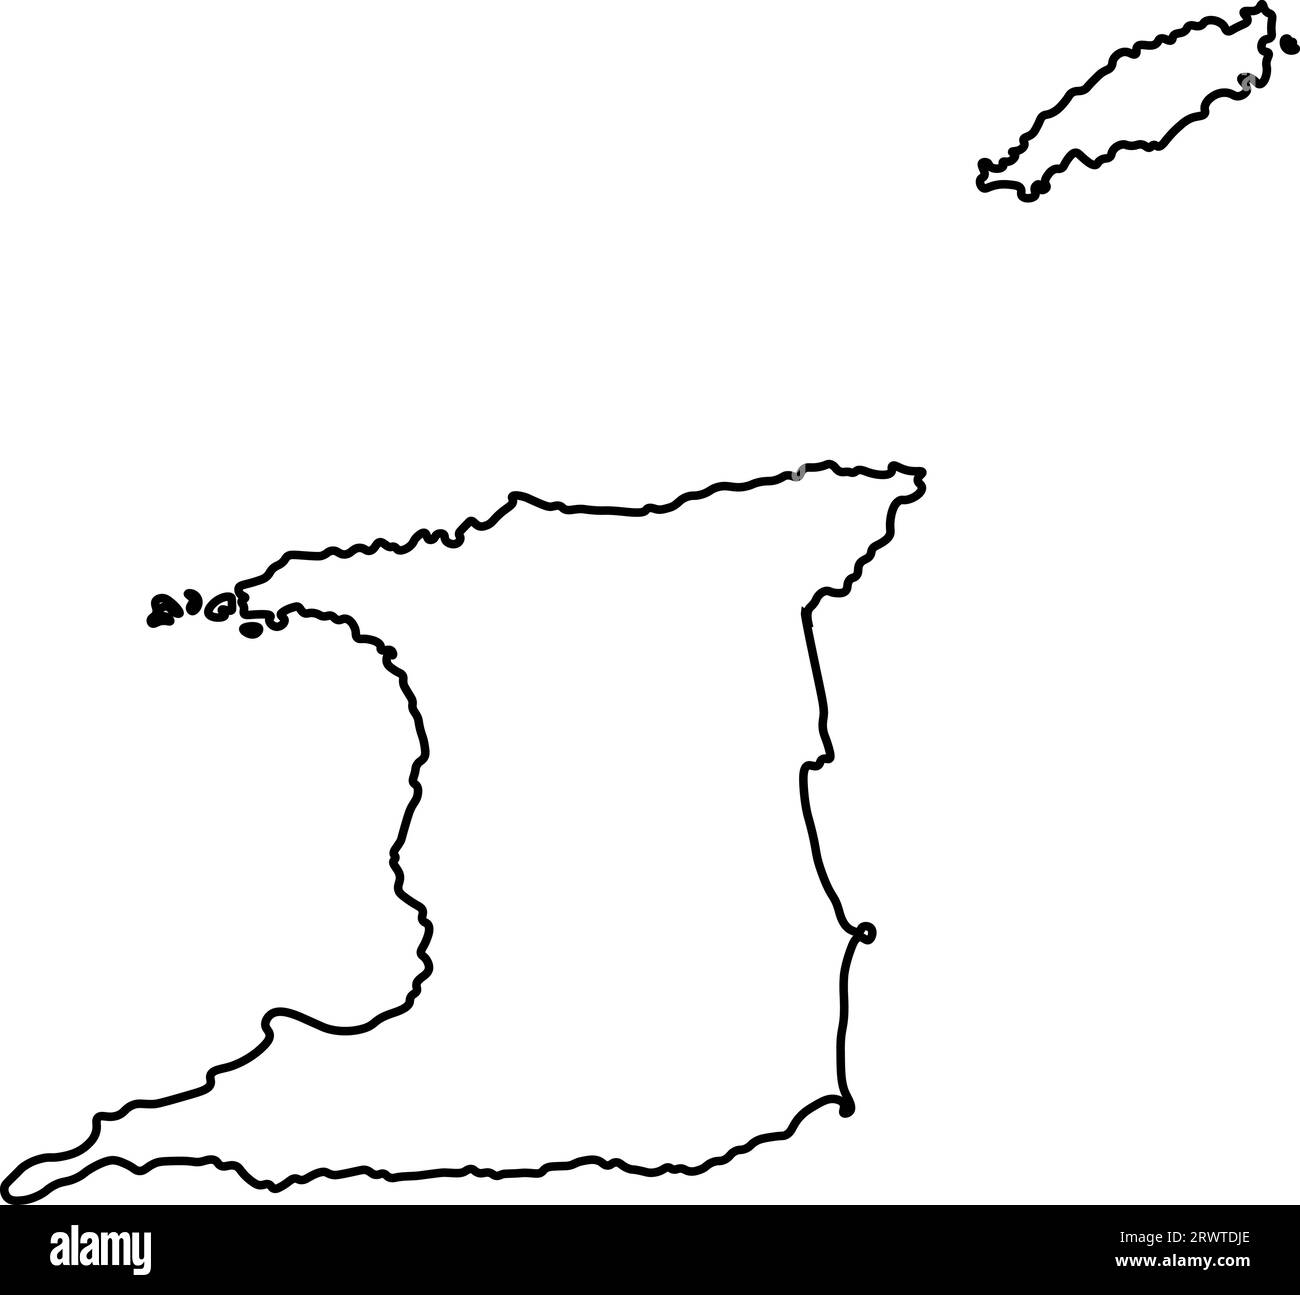 Icône d'illustration isolée vectorielle avec silhouette de ligne noire de carte simplifiée de Trinité-et-Tobago. Illustration de Vecteur